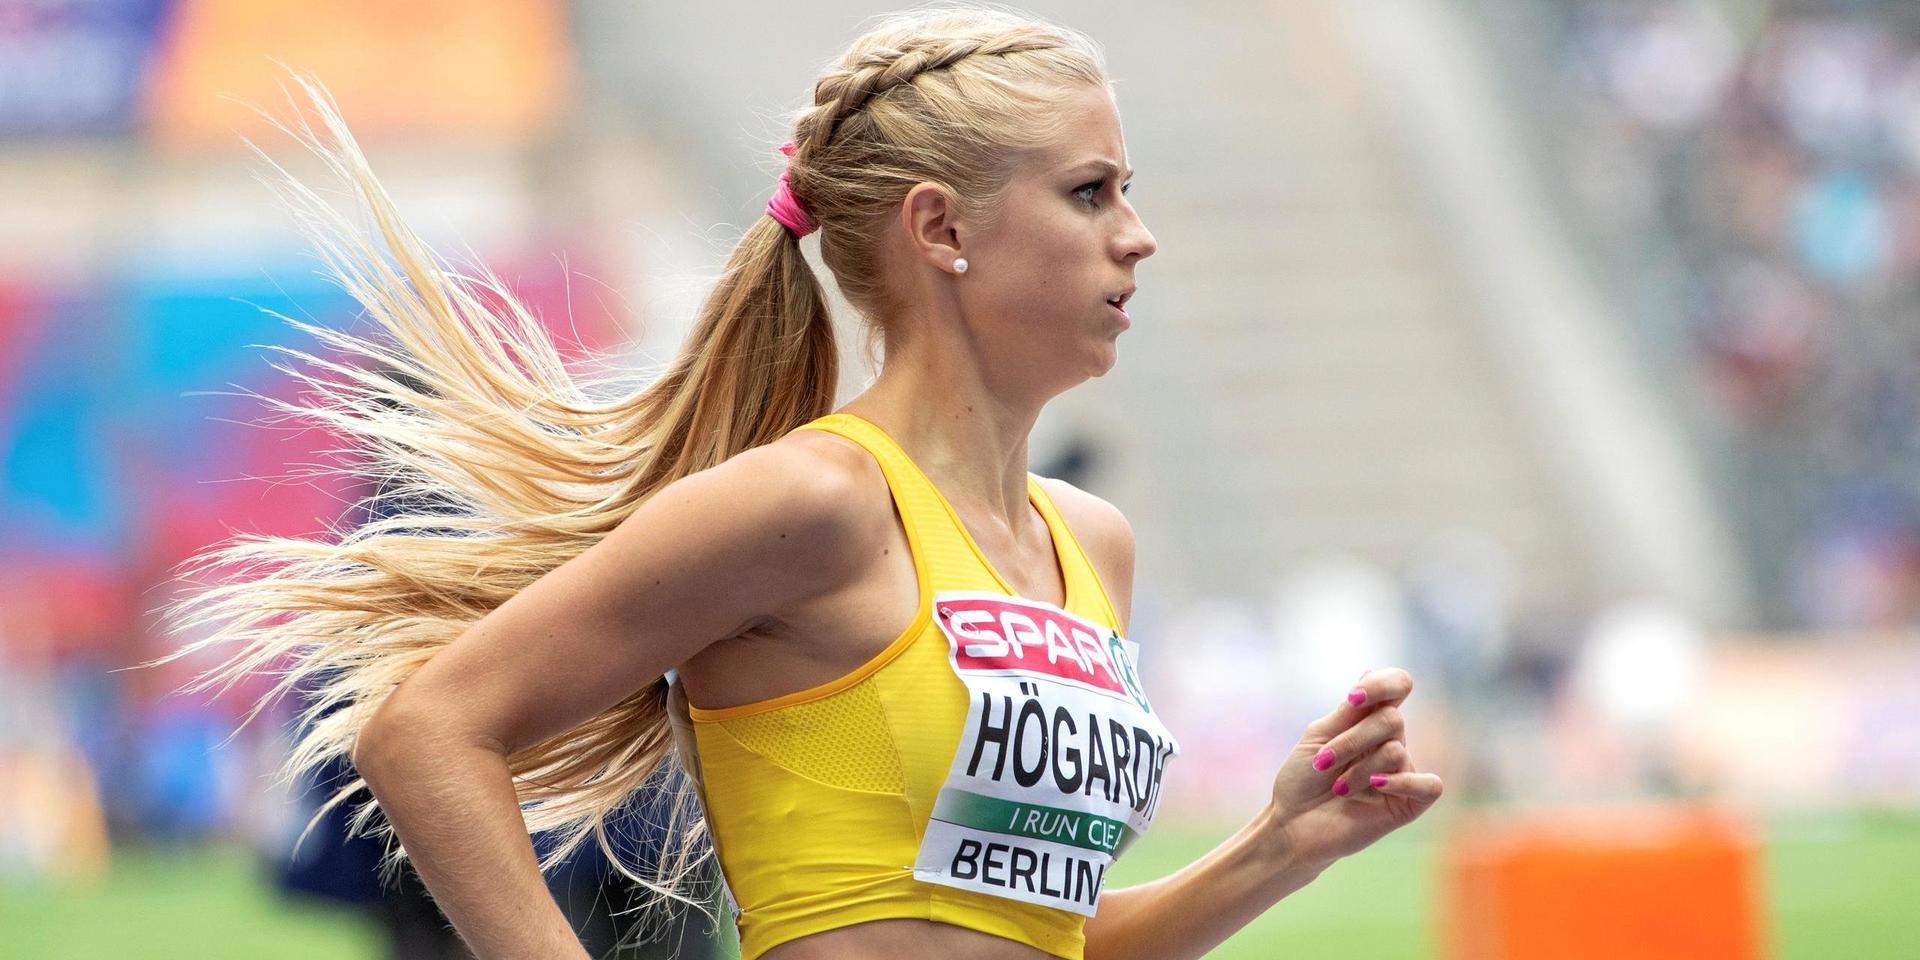 Caroline Högardh från Kvibille är äntligen tillbaka på löparbanan – men det har varit en lång resa efter skadeproblemen.